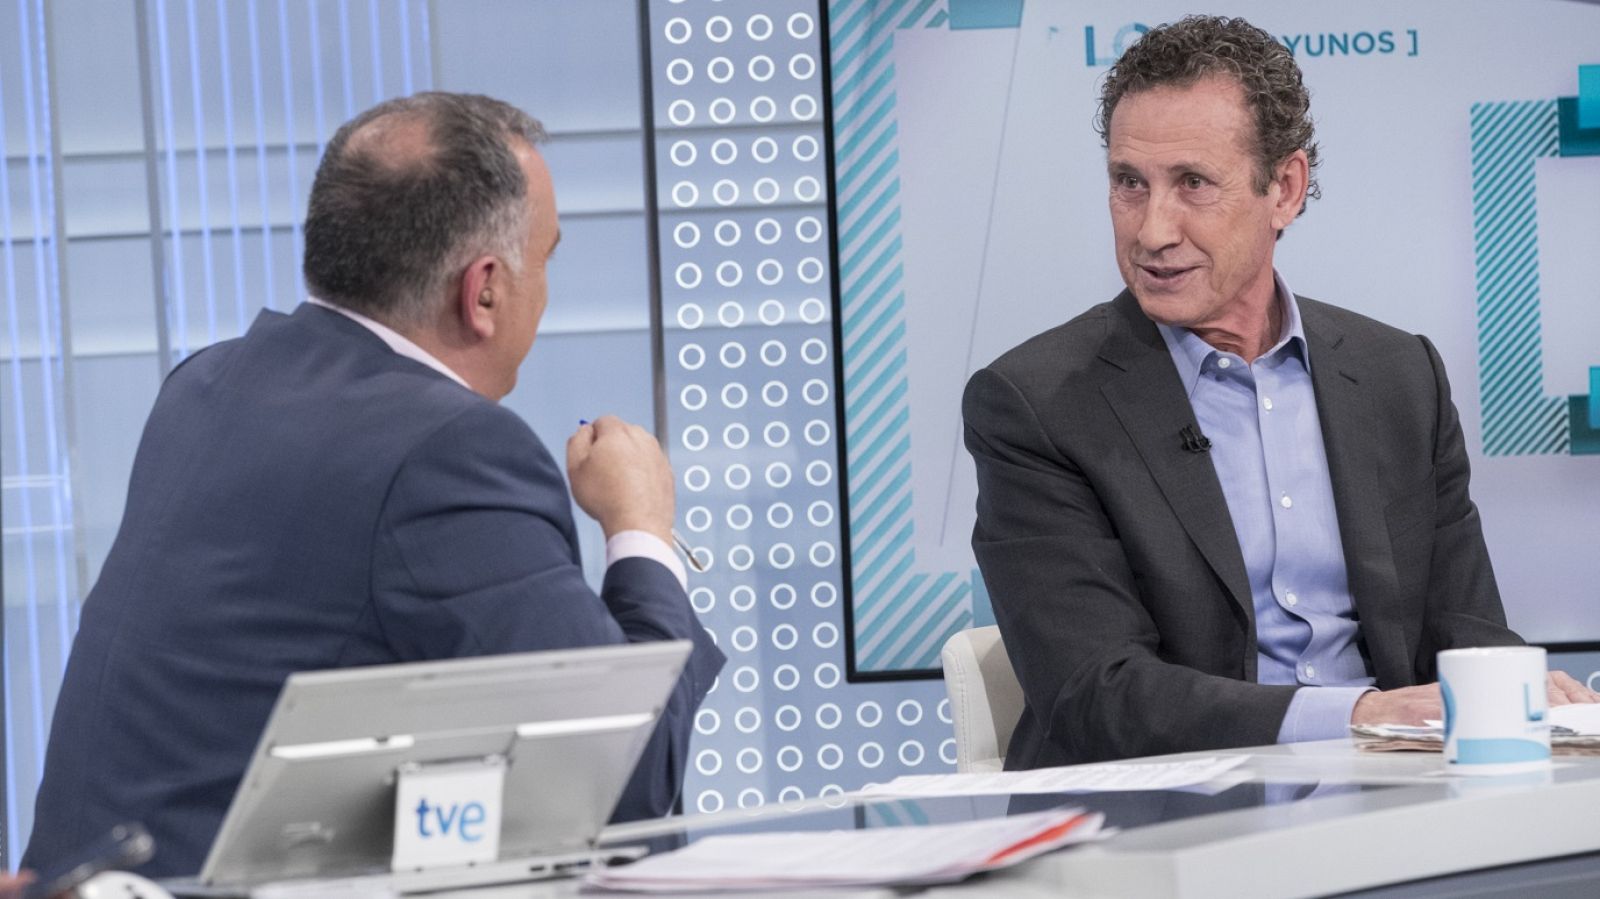 Los desayunos de TVE - Jorge Valdano, exjugador y exentrenador de fútbol - RTVE.es